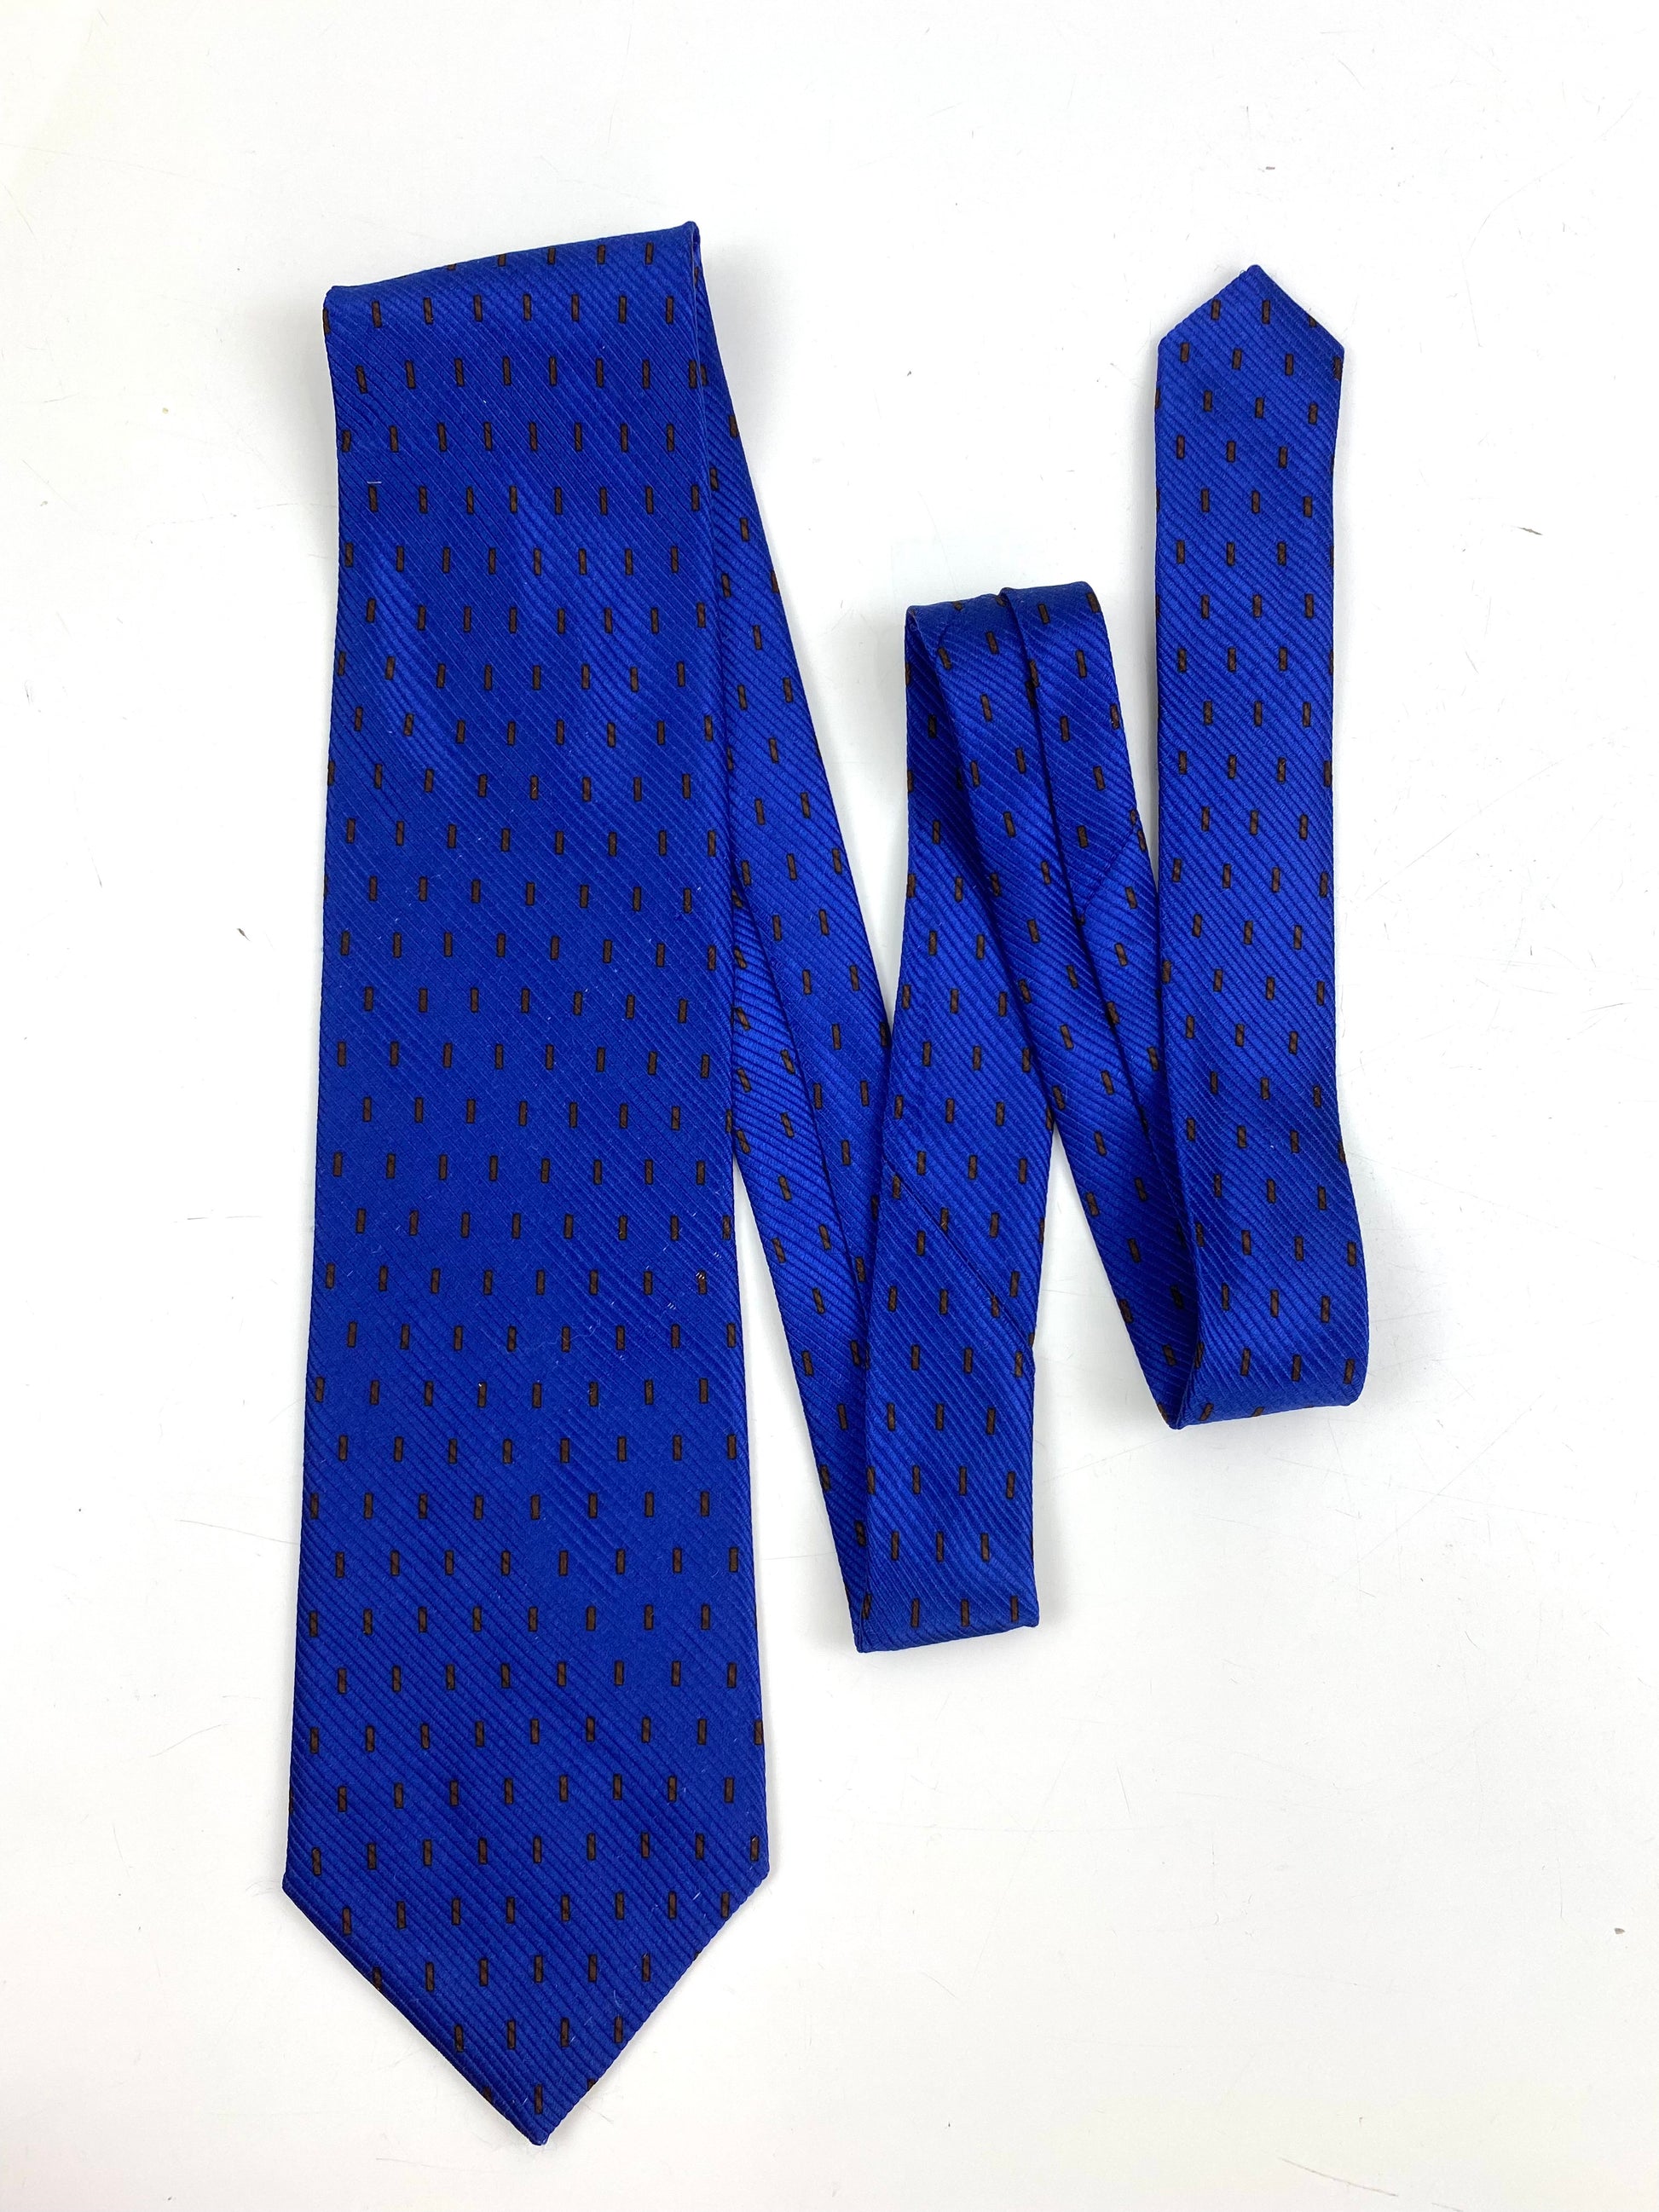 90s Deadstock Silk Necktie, Men's Vintage Purple Geometric Pattern Tie, NOS